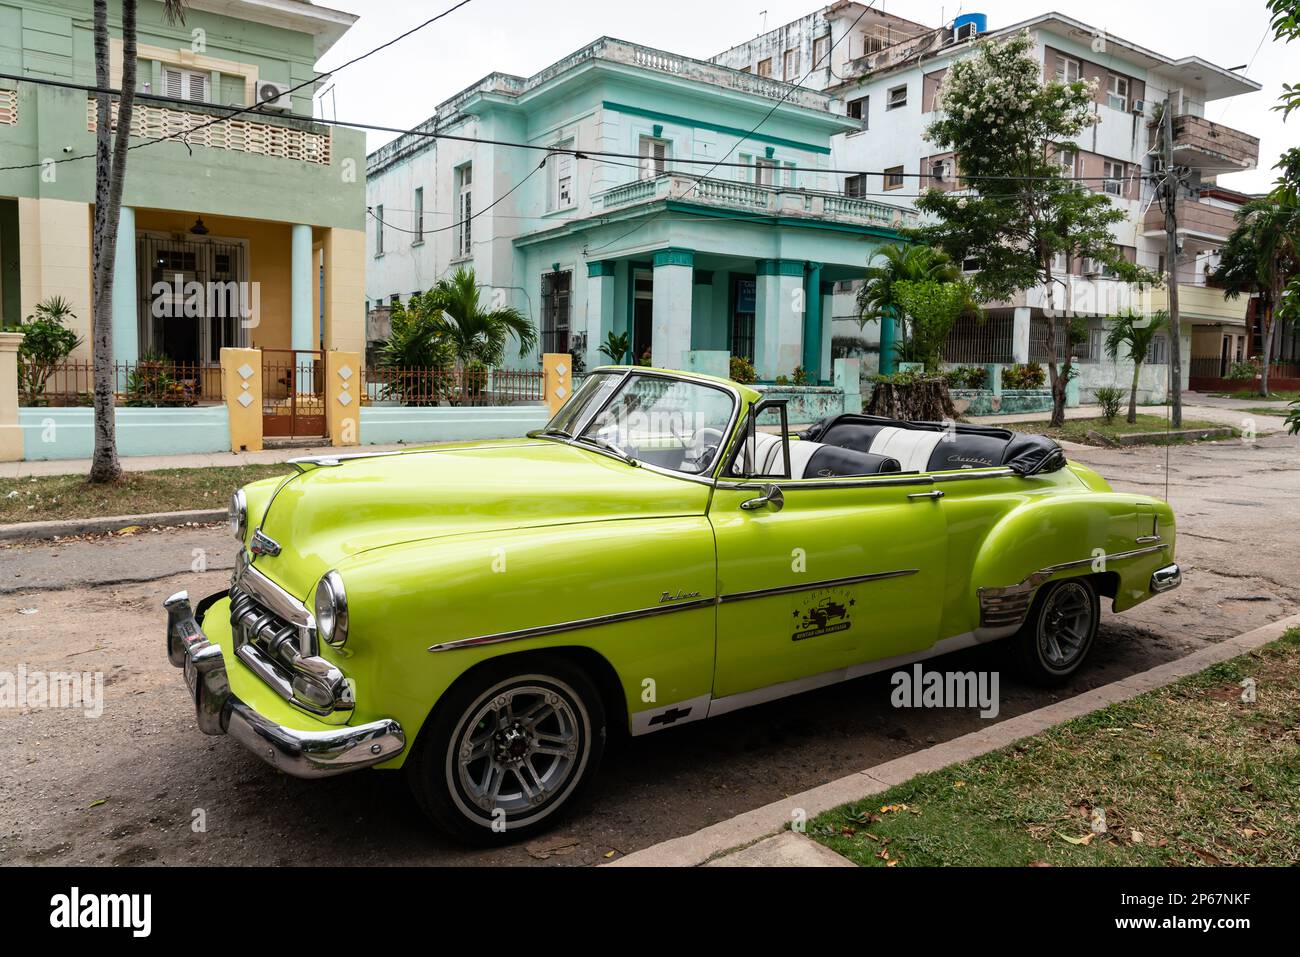 Grüner, oben offener Chevrolet-Klassiker, geparkt in einem Vorort, Havanna, Kuba, den Westindischen Inseln, der Karibik, Mittelamerika Stockfoto